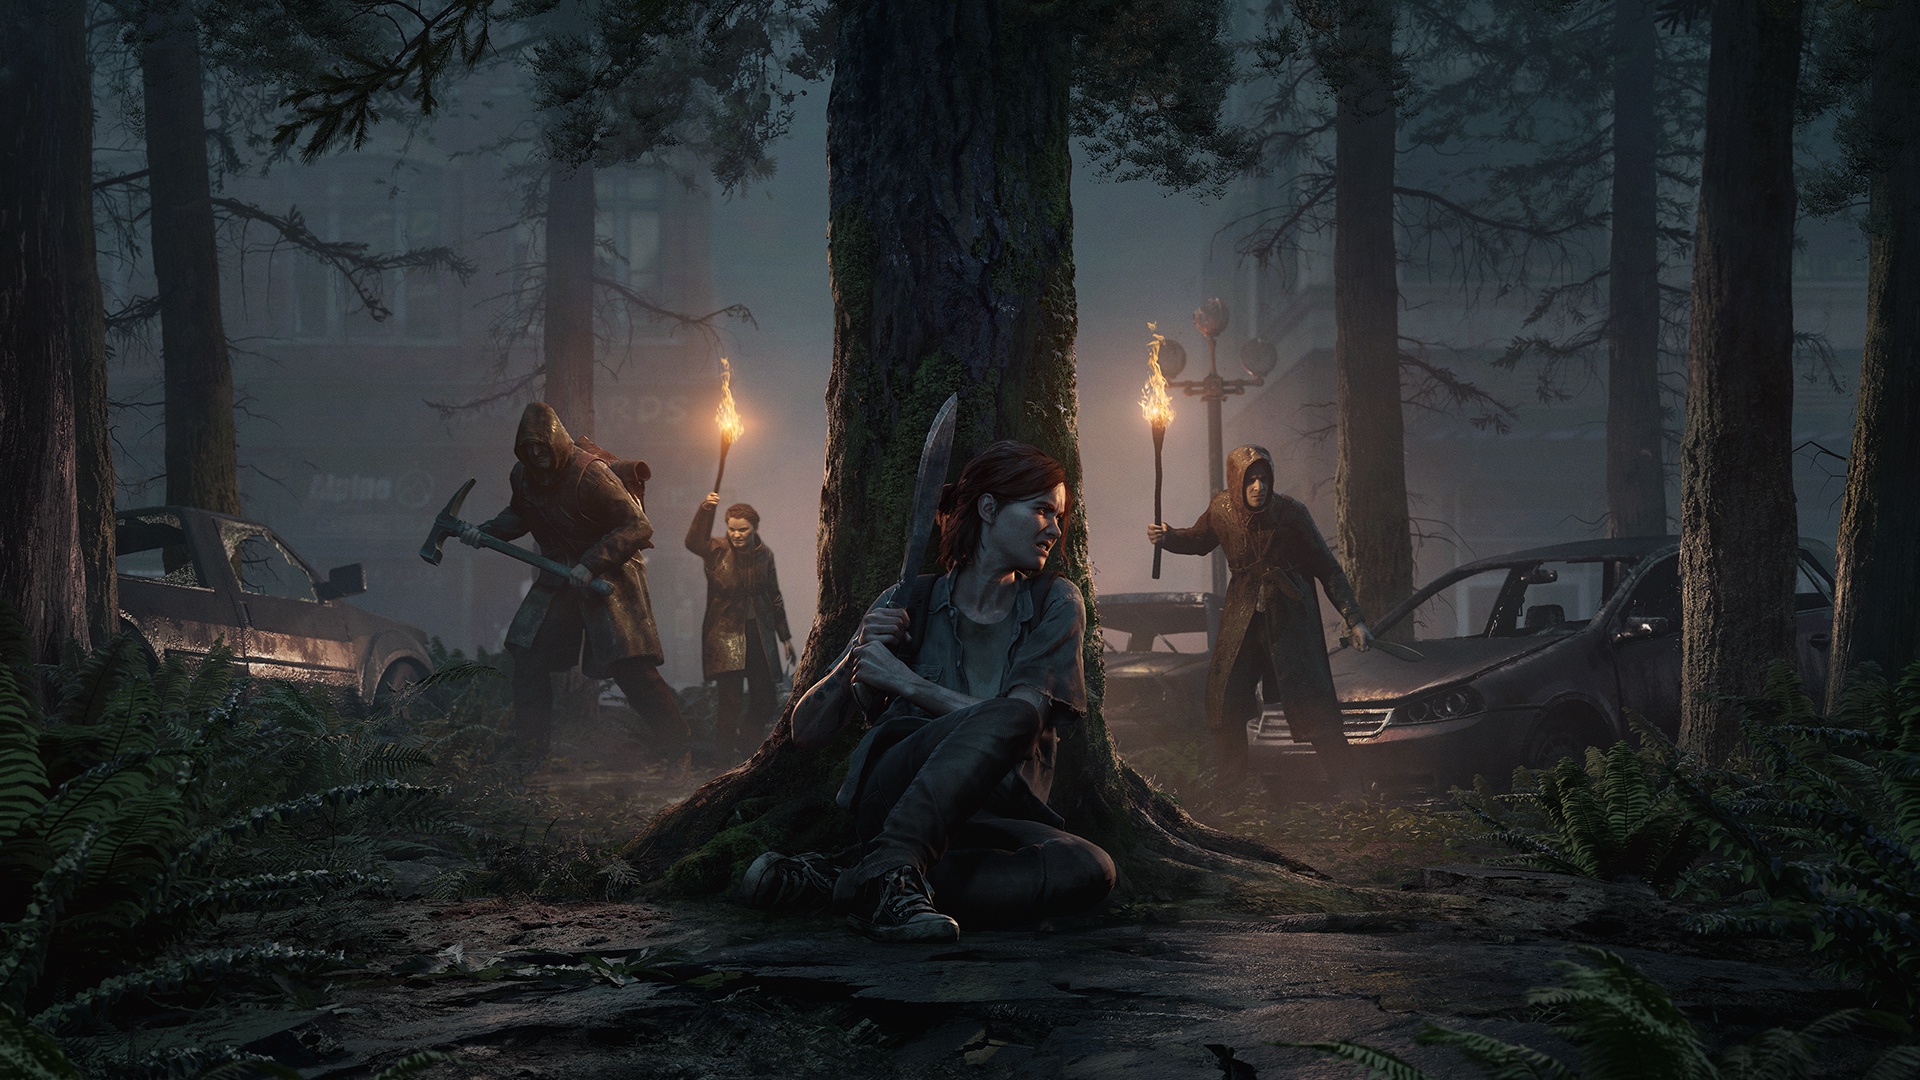 Unduh tema dan wallpaper ‘The Last of Us Part II’ untuk PS4 4